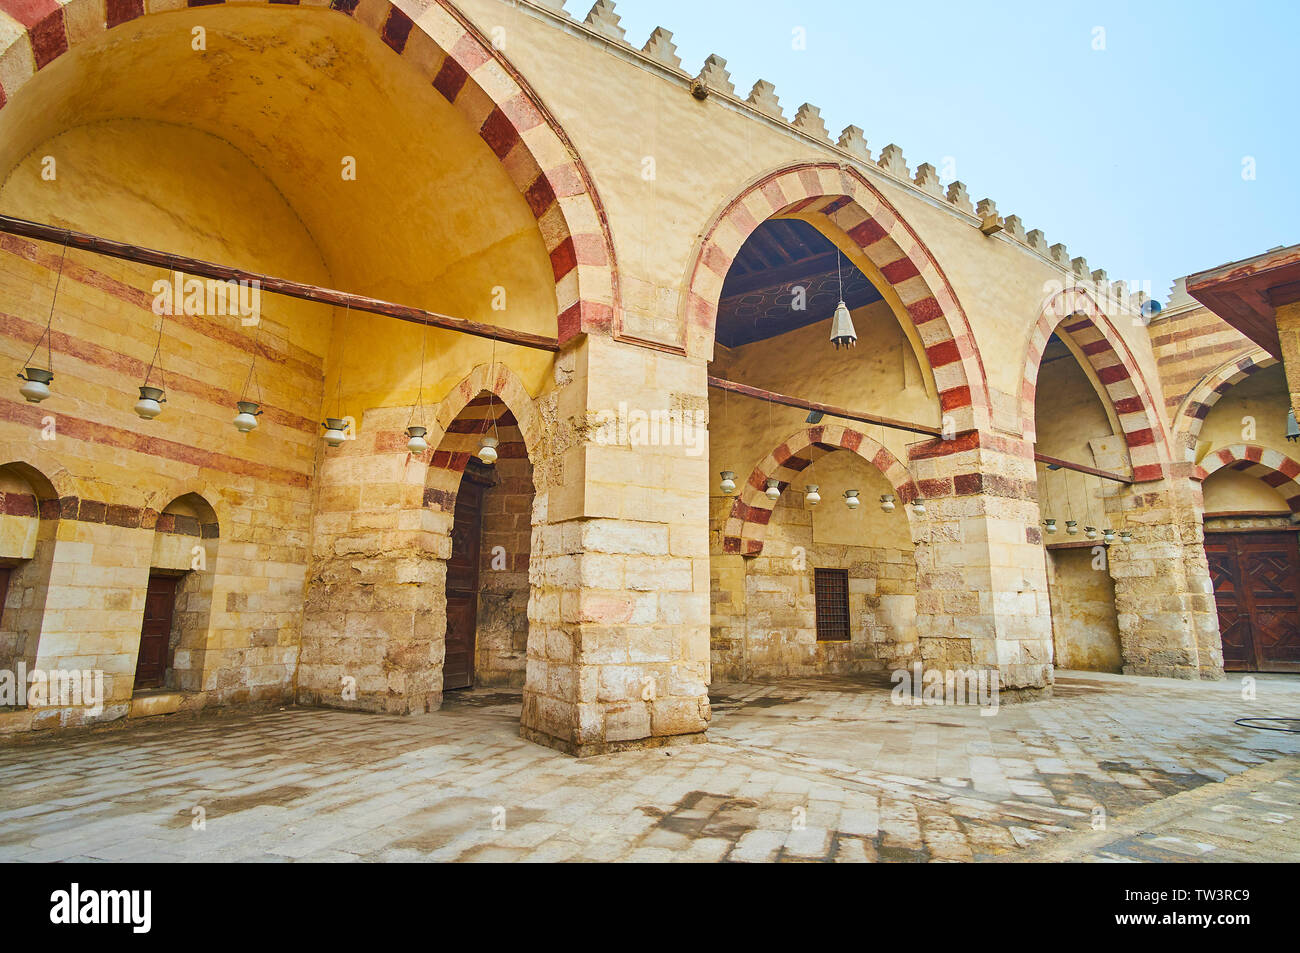 La pietra medievale di arcade Aqsunqur (blu) Moschea con stile Ablaq (con striping) pietra decorazione di archetti pensili e lampade ad olio, Cairo islamico, Egitto Foto Stock